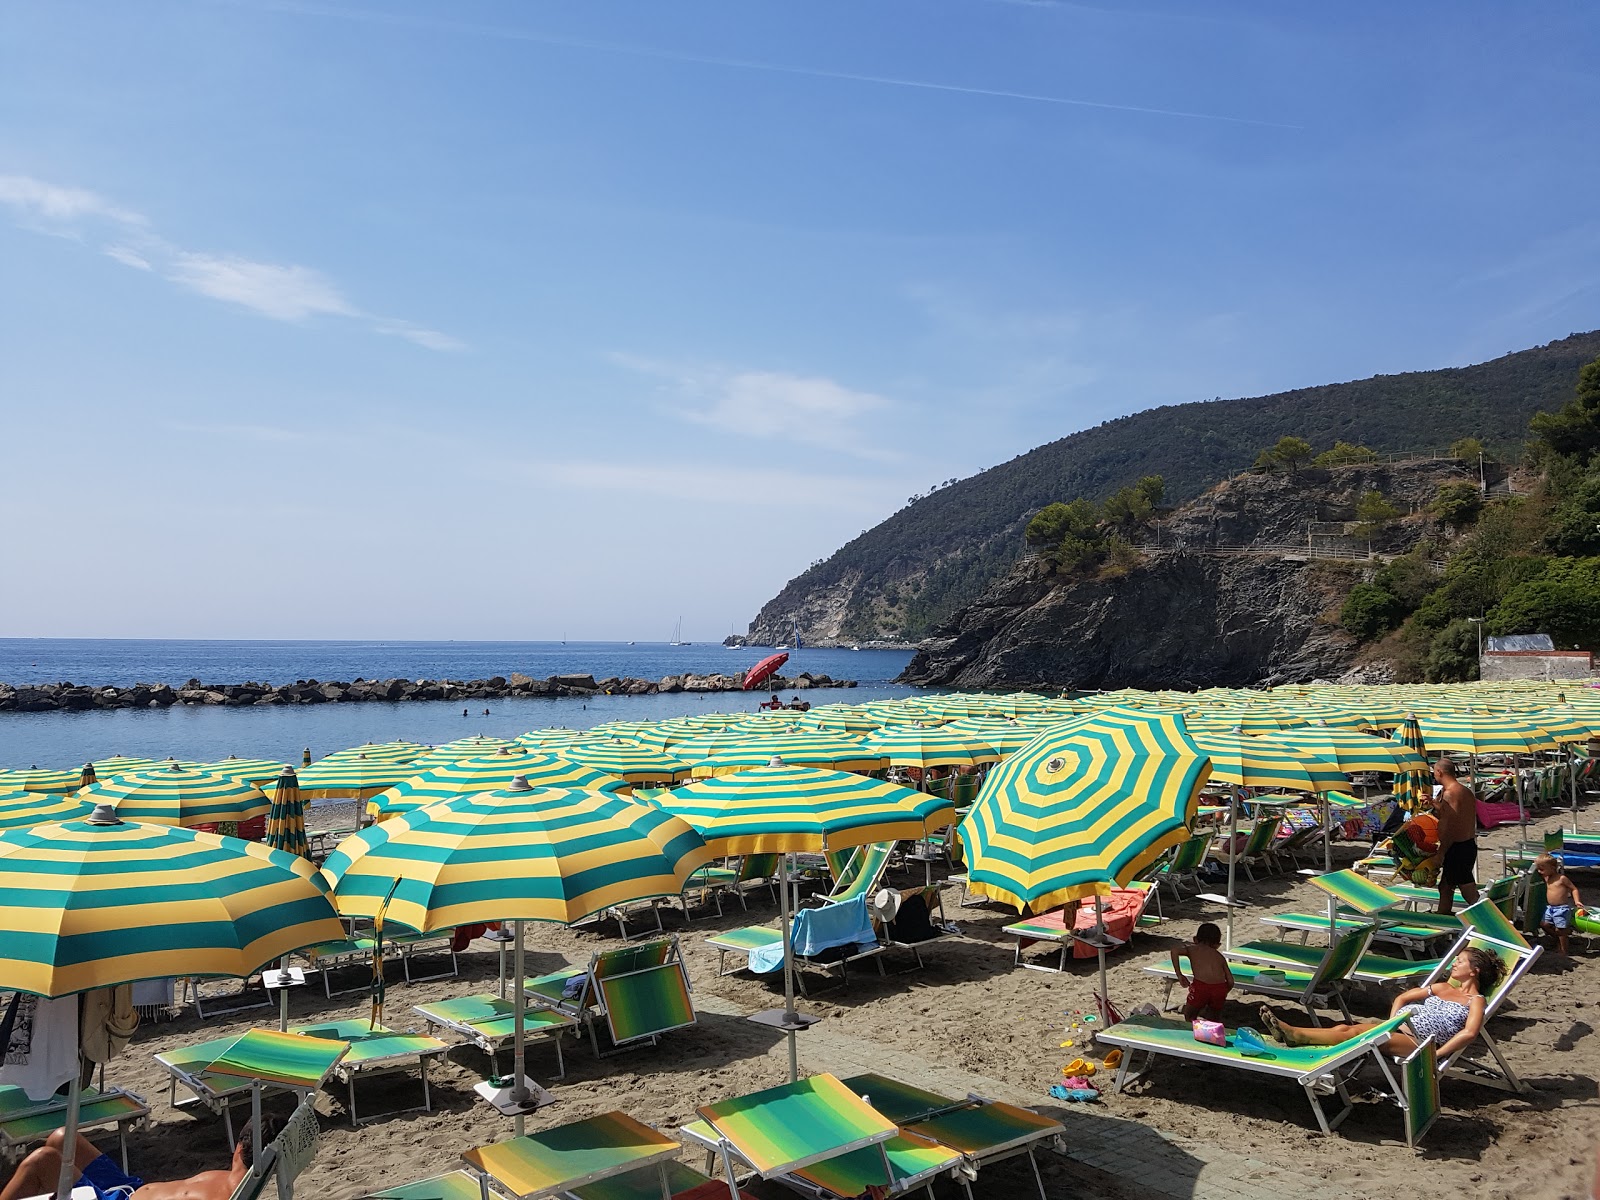 Foto af Spiaggia Moneglia - populært sted blandt afslapningskendere